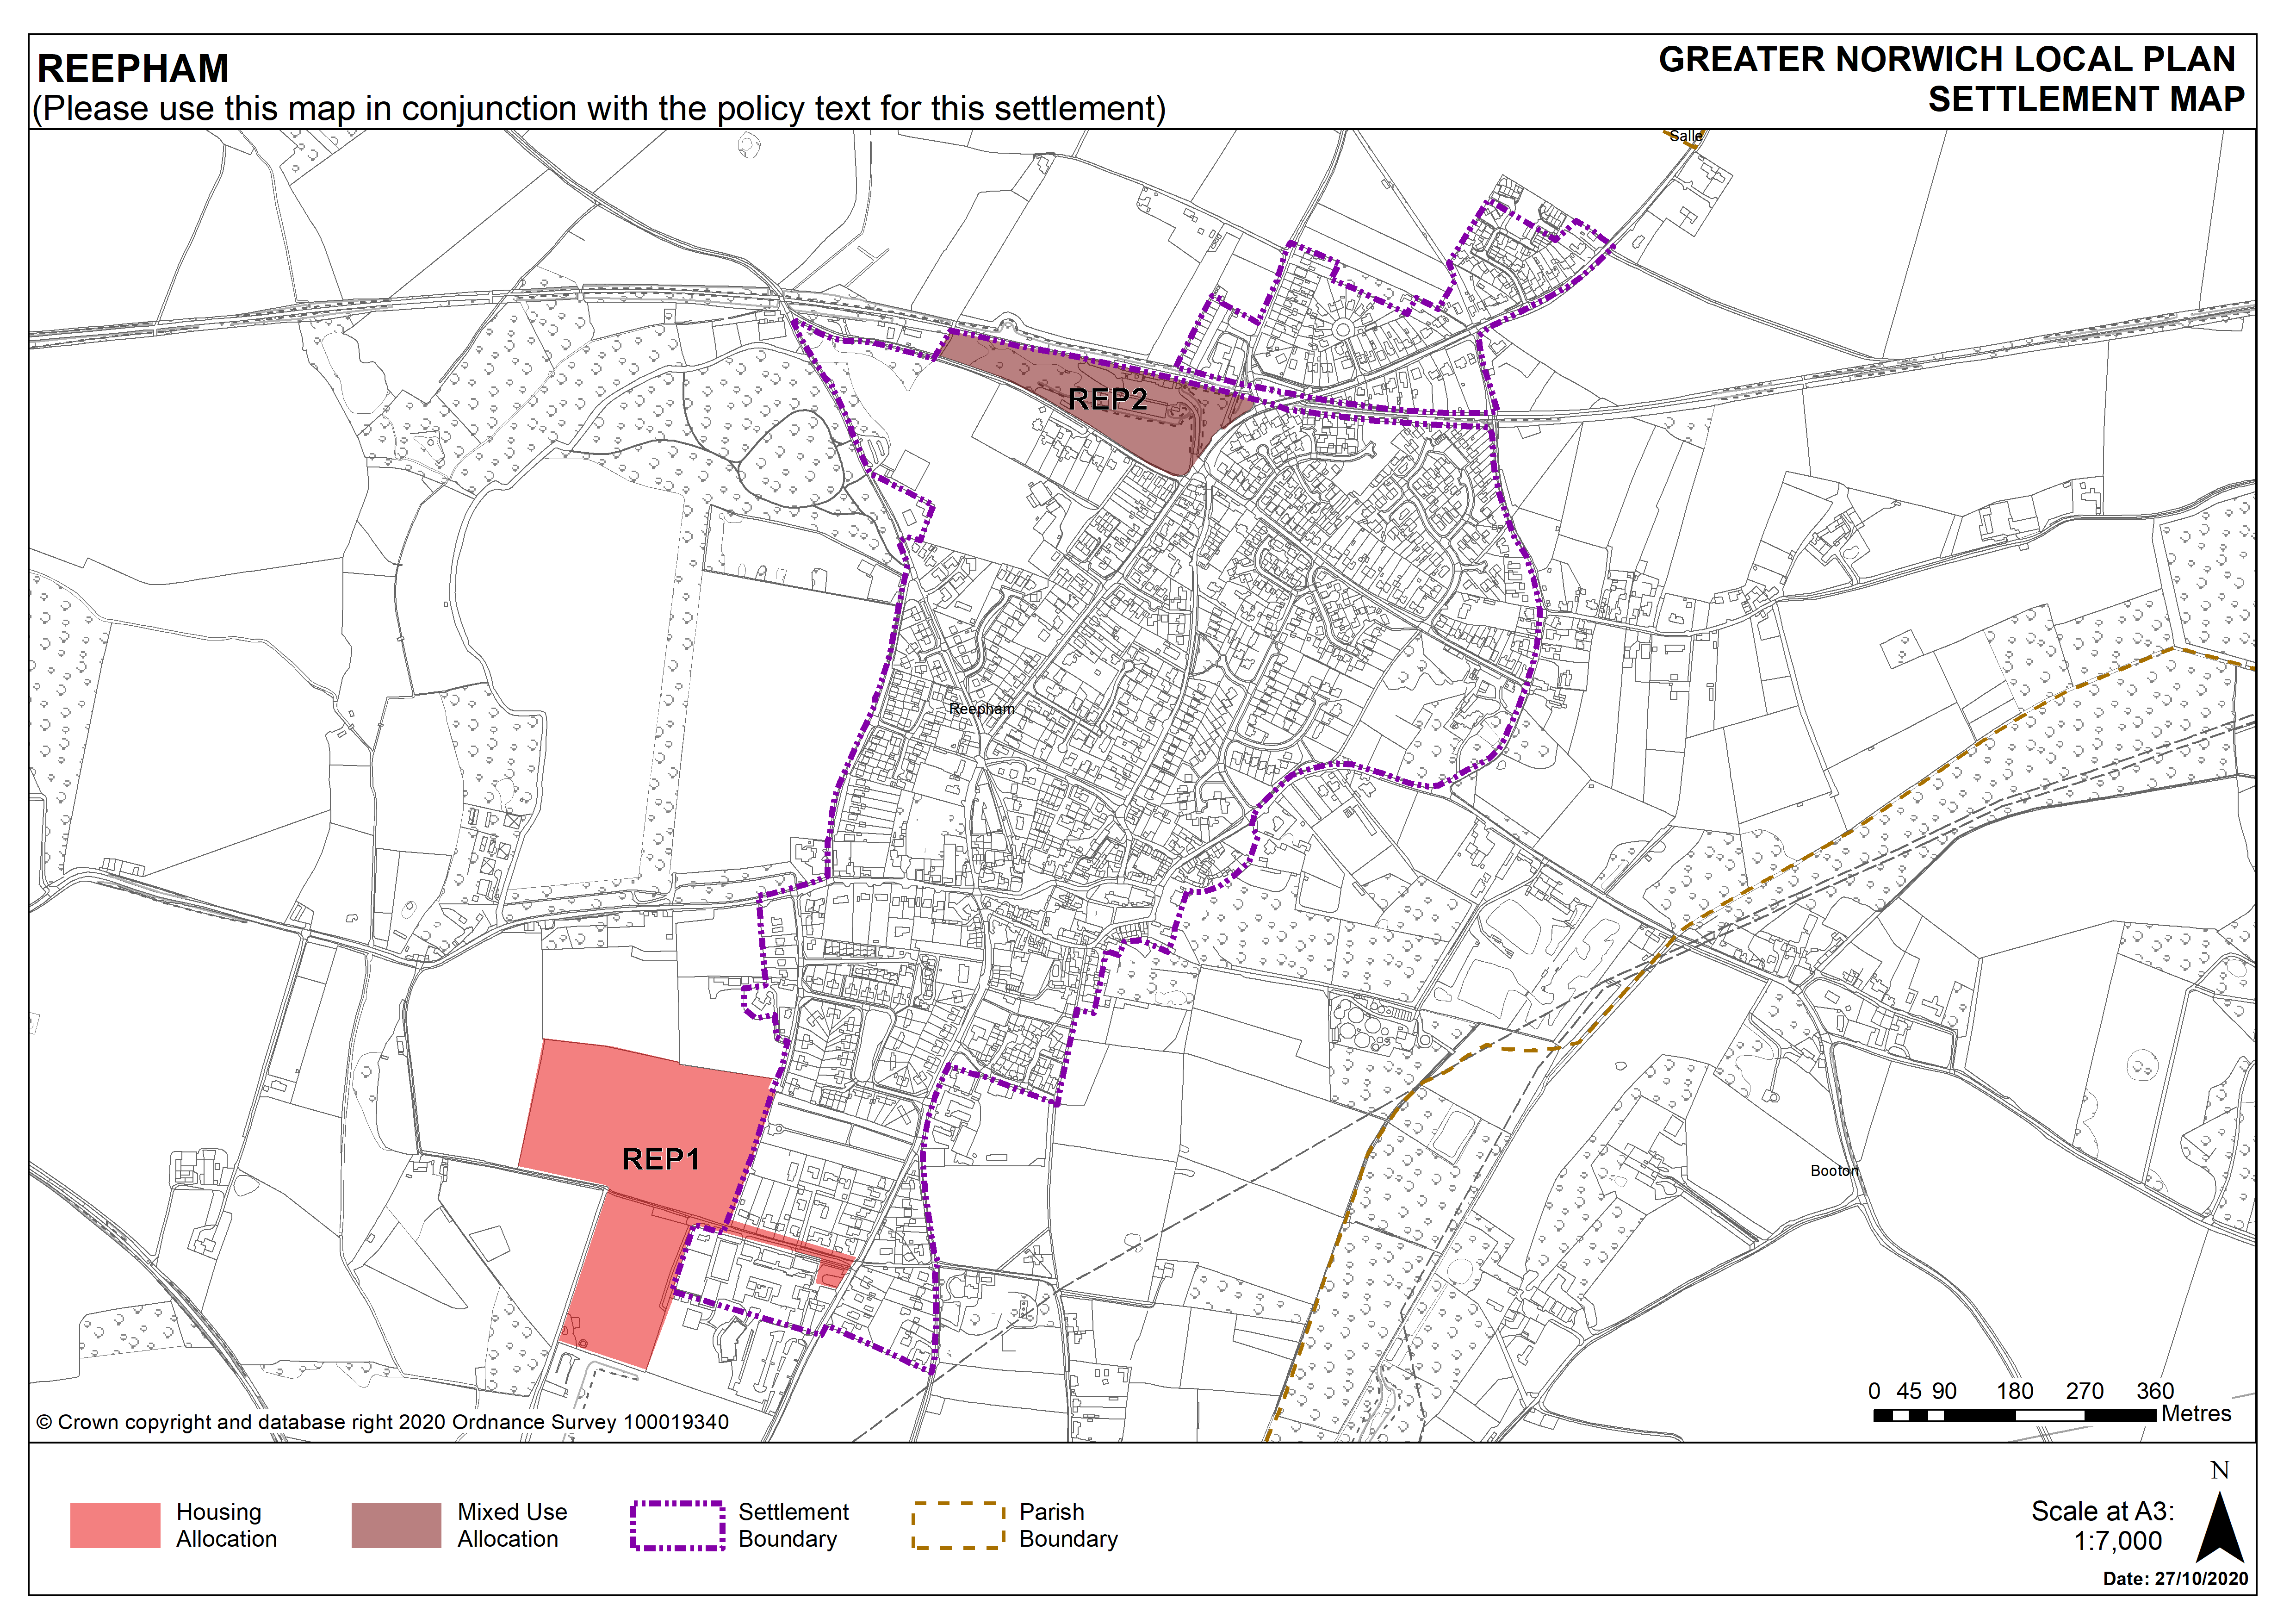 Reepham Settlement Map